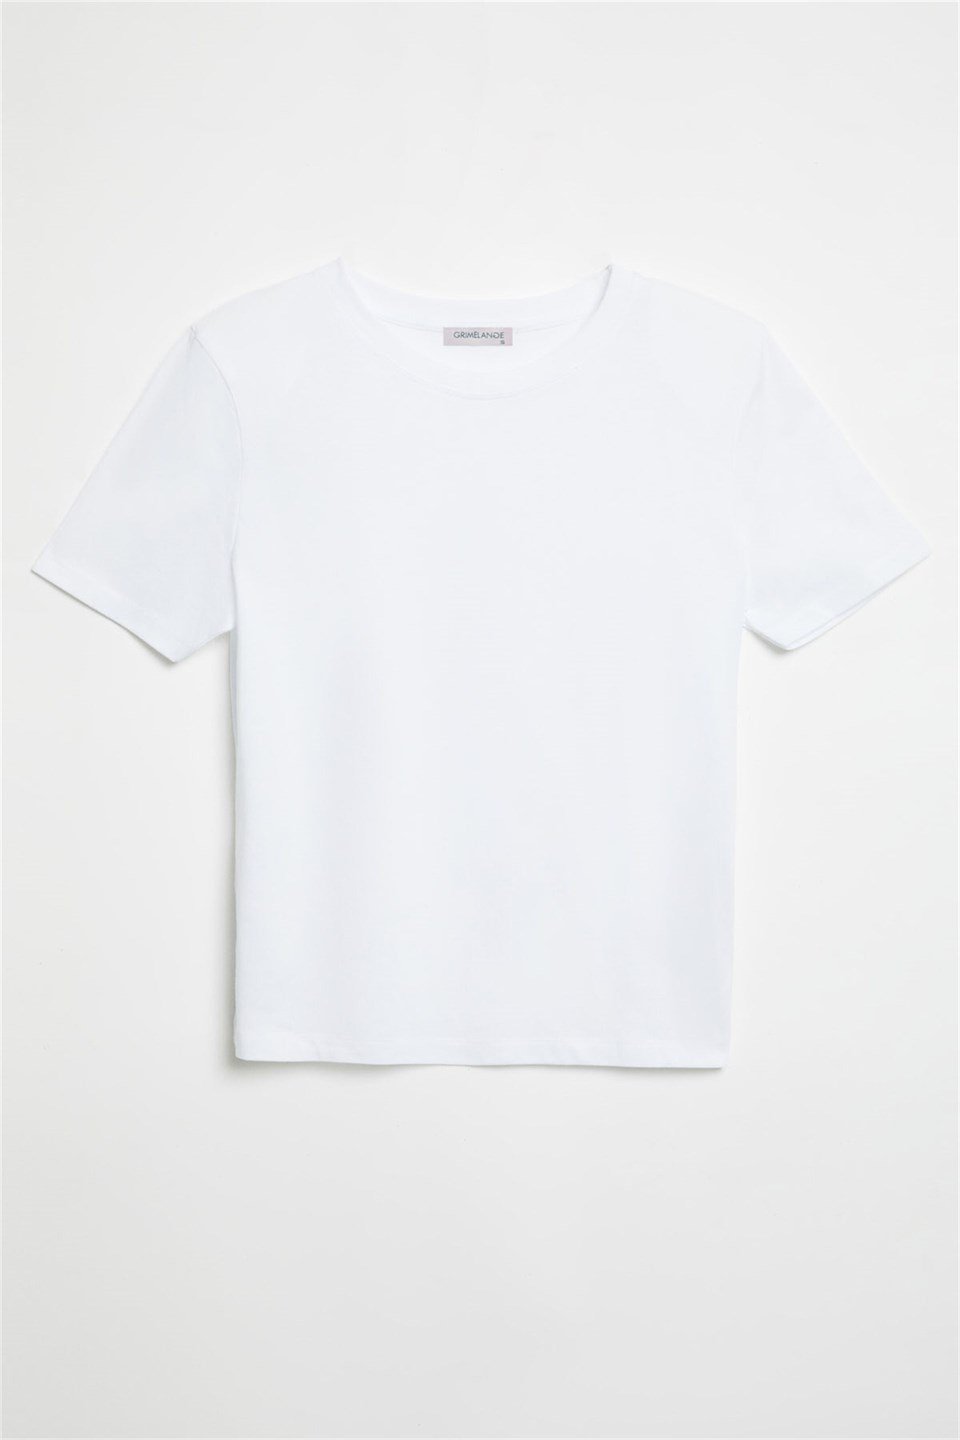 HANNAH Kadın Beyaz Düz Renk Yuvarlak Yaka Comfort Fit T-Shirt